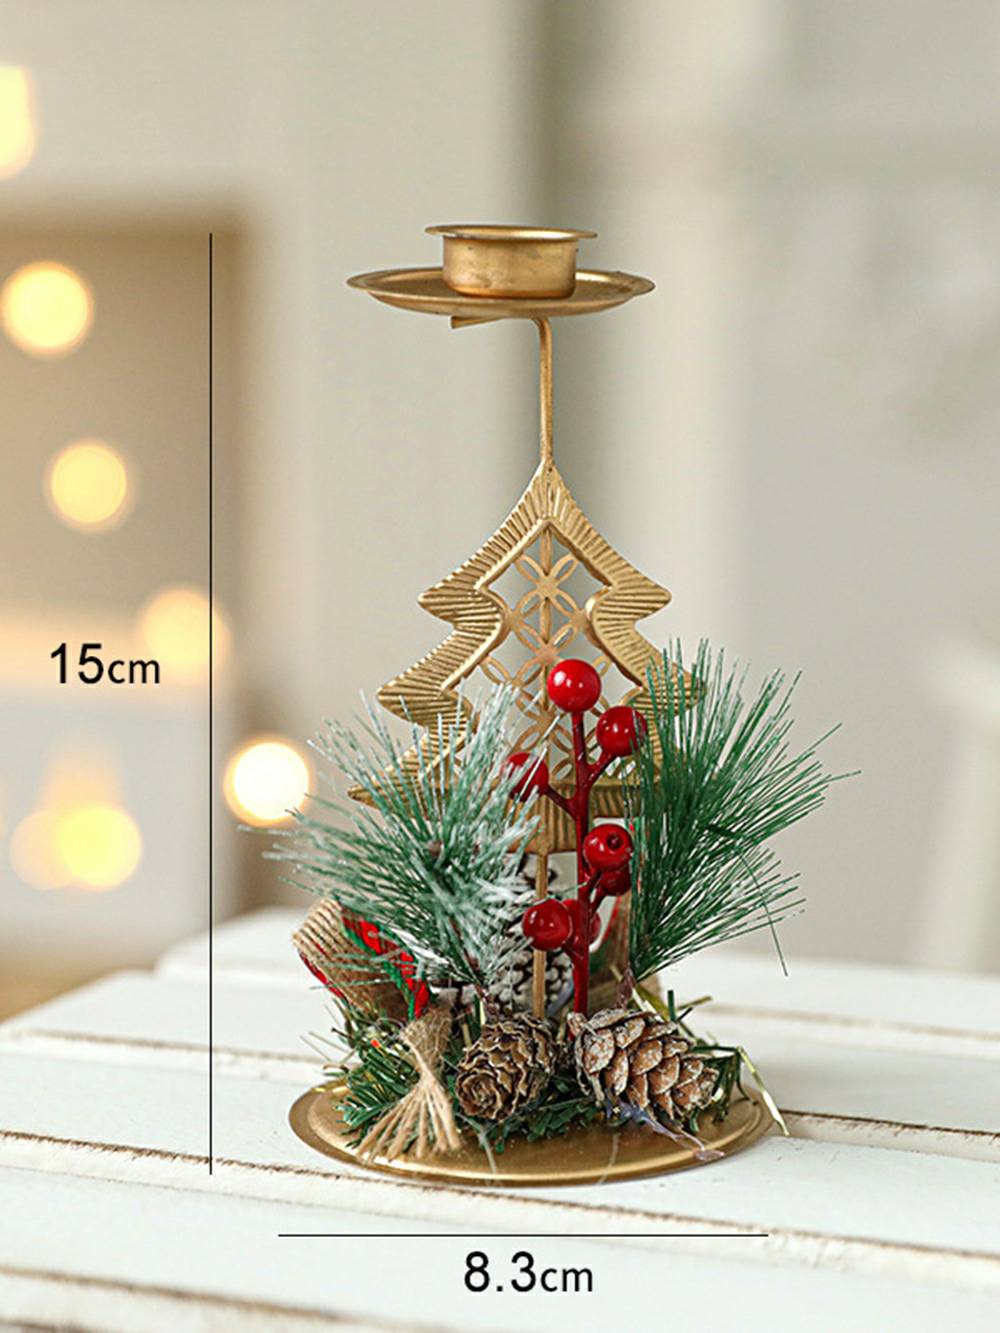 Świąteczny złoty żelazny świecznik - świąteczny akcent dekoracyjny